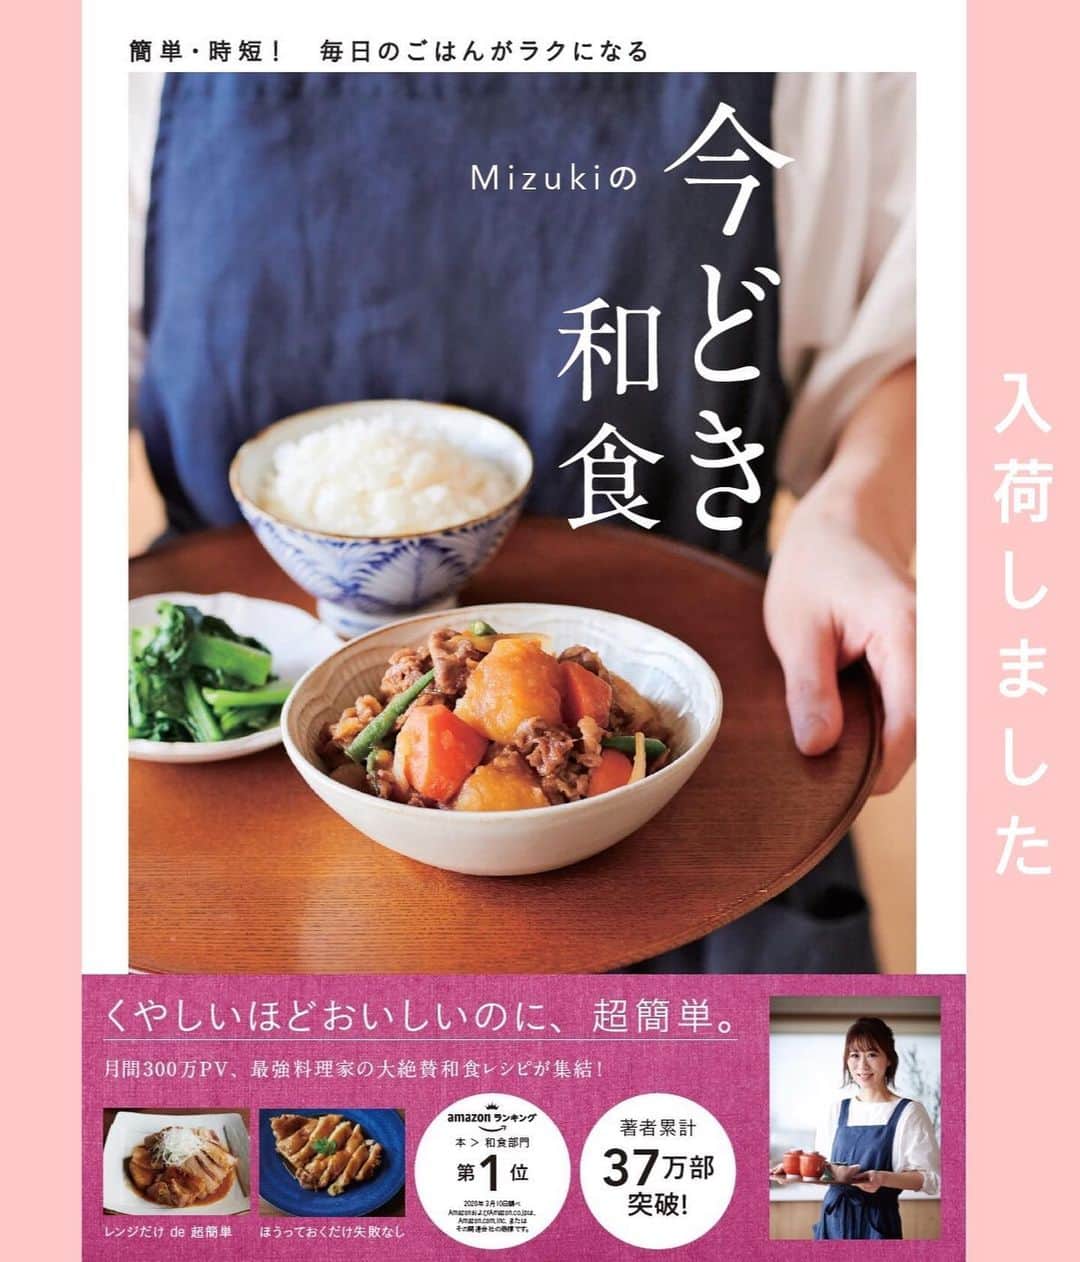 Mizuki【料理ブロガー・簡単レシピ】さんのインスタグラム写真 - (Mizuki【料理ブロガー・簡単レシピ】Instagram)「・﻿ 【レシピ】ーーーーーーーーーー﻿ ♡鶏むね肉のごまねぎポン酢♡﻿ ーーーーーーーーーーーーーーー﻿ ﻿ ﻿ ﻿  おはようございます(*^^*)﻿ ﻿ 今日ご紹介させていただくのは﻿ コスパ抜群の節約おかず！﻿ ささっと焼いた鶏むね肉に﻿ 風味満点のごまねぎポン酢をかけました♩﻿ さっぱりと食べられて﻿ これからの季節にぴったりですよ♡﻿ ﻿ とっても簡単にできるので﻿ よかったらお試し下さいね(*´艸`)﻿ ﻿ ﻿ ﻿ ーーーーーーーーーーーーーーーーーーーー﻿ 【2人分】﻿ 鶏むね肉...大1枚(300g)﻿ ●酒...大1﻿ ●塩...小1/4﻿ 片栗粉...適量﻿ サラダ油...大1.5﻿ ☆万能ねぎ(小口切り)...4本﻿ ☆ポン酢...大3﻿ ☆白ごま...大2﻿ ☆ごま油...小1/2﻿ ﻿ 1.☆を合わせてたれを作っておく。鶏むね肉は全体をフォークで刺して1cm厚さの削ぎ切りにし、●を揉み込み、片栗粉をまぶす。﻿ 2.フライパンにサラダ油を入れて中火で熱し、鶏肉を焼く。焼き色が付いたら裏返してフタをし、弱めの中火で3分蒸し焼きにする。﻿ 3.器に盛り、1のたれをかける。﻿ ーーーーーーーーーーーーーーーーーーーー﻿ ﻿ ﻿ ﻿ 《ポイント》﻿ ♦︎鶏むね肉は全体をフォークで刺し、薄めの削ぎ切りにすること、粉をまぶして焼くことで柔らかく仕上がります♩﻿ ♦︎ねぎの量はお好みで大丈夫です♩﻿ ﻿ ﻿ ﻿ ﻿ ﻿ ﻿ ﻿ ﻿ 🔻入荷しました🔻﻿ ストーリーにリンク貼っています🙇‍♀️﻿ ＿＿＿＿＿＿＿＿＿＿＿＿＿＿＿＿＿＿＿﻿ 📕\ \ 新刊発売中 / /📕﻿ 簡単・時短！ 毎日のごはんがラクになる﻿ ✨🦋 【 #Mizukiの今どき和食 】🦋✨﻿ ＿＿＿＿＿＿＿＿＿＿＿＿＿＿＿＿＿＿＿﻿ ﻿ なるべく少ない材料で﻿ 手間も時間も省きながら﻿ 簡単にできるおいしい和食レシピ♩﻿ 簡単に失敗なくマスターできる一冊で﻿ もっと気軽に、カジュアルに﻿ 和食を楽しんで下さいね(*^^*)﻿ ﻿ ﻿ ーーー ⭐️PART.1 メインおかず ⭐️ーーー﻿ 素材別にレシピをご紹介しています♩﻿ 和食の定番から新定番まで﻿ どれも押さえておきたいメニューばかり。﻿ 肉じゃがはフライパンで！焼き豚はレンジで！﻿ ぶり大根は切り身を使って手軽に作ります♩﻿ ﻿ ーーー ☘️PART.2 サブおかず ☘️ーーー﻿ 年中手に入るお手頃野菜と﻿ 乾物や大豆、こんにゃくなどを使った﻿ 副菜レシピをたっぷり掲載！！﻿ 普段SNSではメインおかずばかりなので﻿ 本では副菜にも力を入れています(*^^*)﻿ ﻿ ーーー 🌸PART.3 ごはんと汁物 🌸ーーー﻿ ささっと作れる丼と麺、﻿ みんなで食べたいいなり寿司や﻿ 手巻きごはんもご紹介！﻿ 複数の炊き込みごはんと﻿ 味噌汁&和風スープも盛りだくさん！﻿ ﻿ ﻿ 各レシピのポイントは﻿ 【写真付きで丁寧に解説】﻿ 副菜レシピもたっぷりなので﻿ 【メインページに副菜メモもつけました】﻿ ＊このメインにはこの副菜が合いますよ〜﻿ という献立の提案です(*^^*)﻿ 【その他コラムも充実】﻿ 全127品中ほぼ全て﻿ 【本だけのレシピです！】﻿ ＿＿＿＿＿＿＿＿＿＿＿＿＿＿＿＿＿＿＿﻿ ﻿ ﻿ ﻿ ﻿ ﻿ ＿＿＿＿＿＿＿＿＿＿＿＿＿＿＿＿＿﻿ 🎀発売中🎀﻿ 【#ホットケーキミックスのお菓子 】﻿ ﻿ 一冊まるっとホケミスイーツ♩﻿ 普段のおやつから﻿ 特別な日にも使えるレシピを﻿ この一冊に詰め込みました(*^^*)﻿ ホットケーキミックスを使えば﻿ 簡単に本格的なお菓子が作れますよ♡﻿ ＿＿＿＿＿＿＿＿＿＿＿＿＿＿＿＿＿﻿ ﻿ ⭐️ストーリー、ハイライト、プロフ画面に﻿ 本のURLを貼らせていただいております♩﻿ →(@mizuki_31cafe )﻿ ﻿ ﻿ ﻿ ﻿ ﻿ #鶏むね肉#鶏肉#さっぱり#ヘルシー#節約#うちで過ごそう#おうち時間#Mizuki#簡単レシピ#時短レシピ#節約レシピ#料理#レシピ#フーディーテーブル#マカロニメイト#おうちごはん#おうちカフェ#デリスタグラマー#料理好きな人と繋がりたい#おうちごはん#lover#foodpic#follow#cooking#recipe#lin_stagrammer#stayhome#鶏むね肉のごまねぎポン酢m」5月31日 7時52分 - mizuki_31cafe